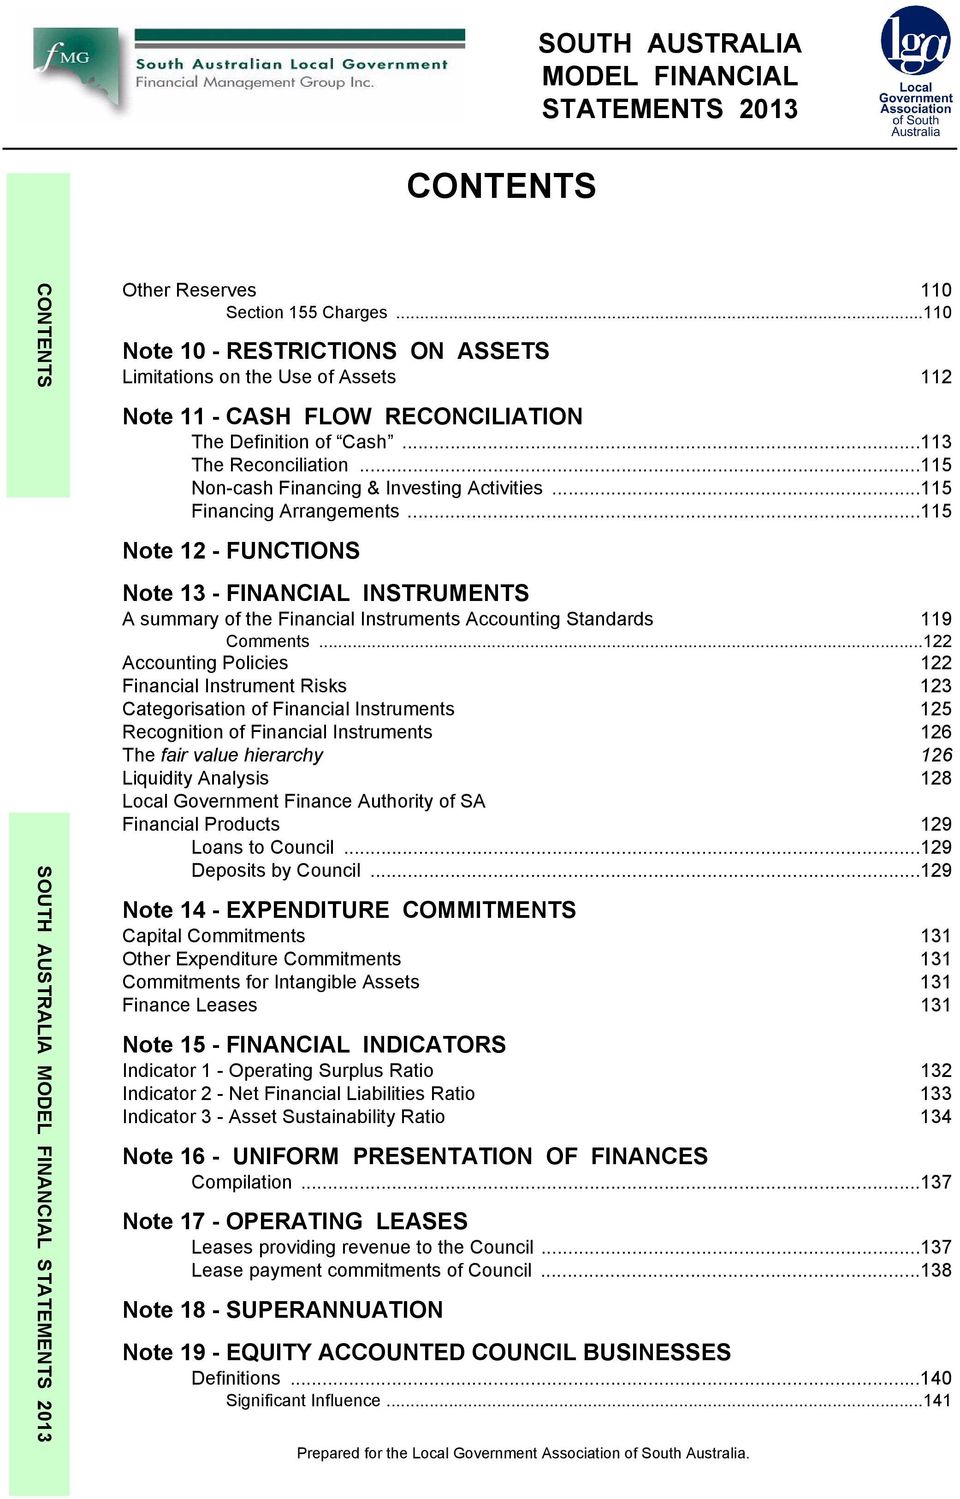 ..115 Non-cash Financing & Investing Activities...115 Financing Arrangements.